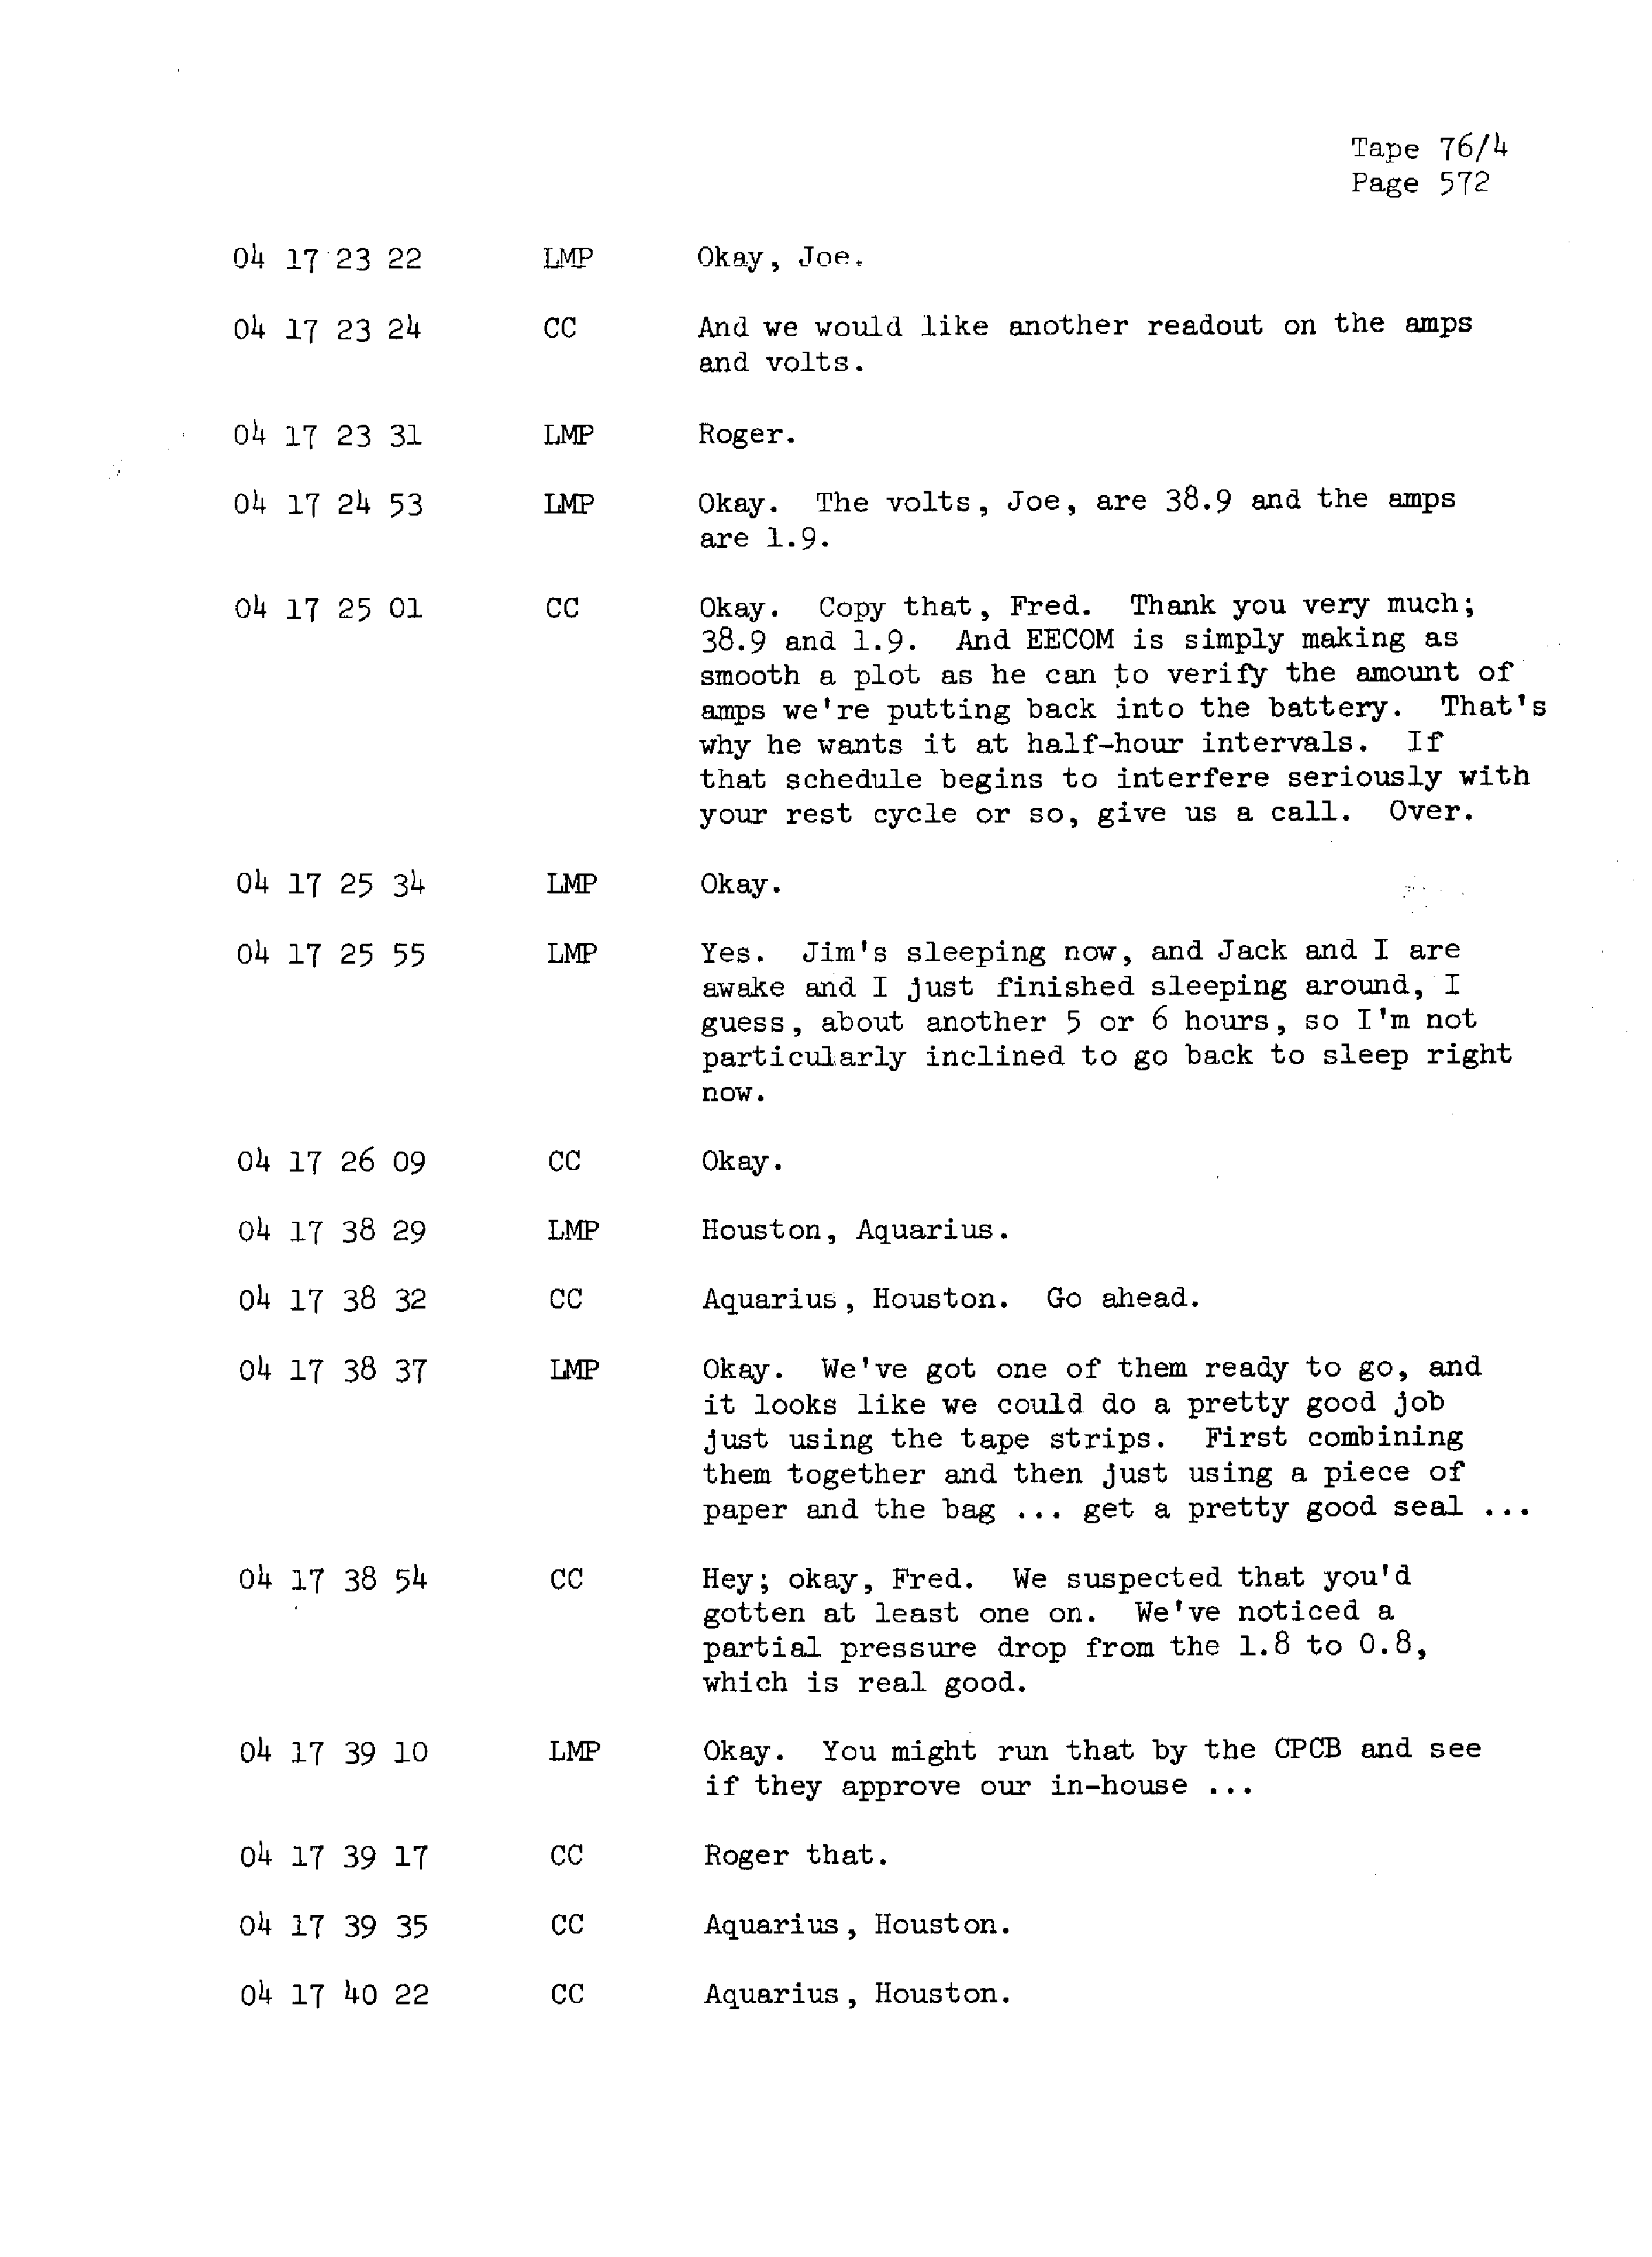 Page 579 of Apollo 13’s original transcript